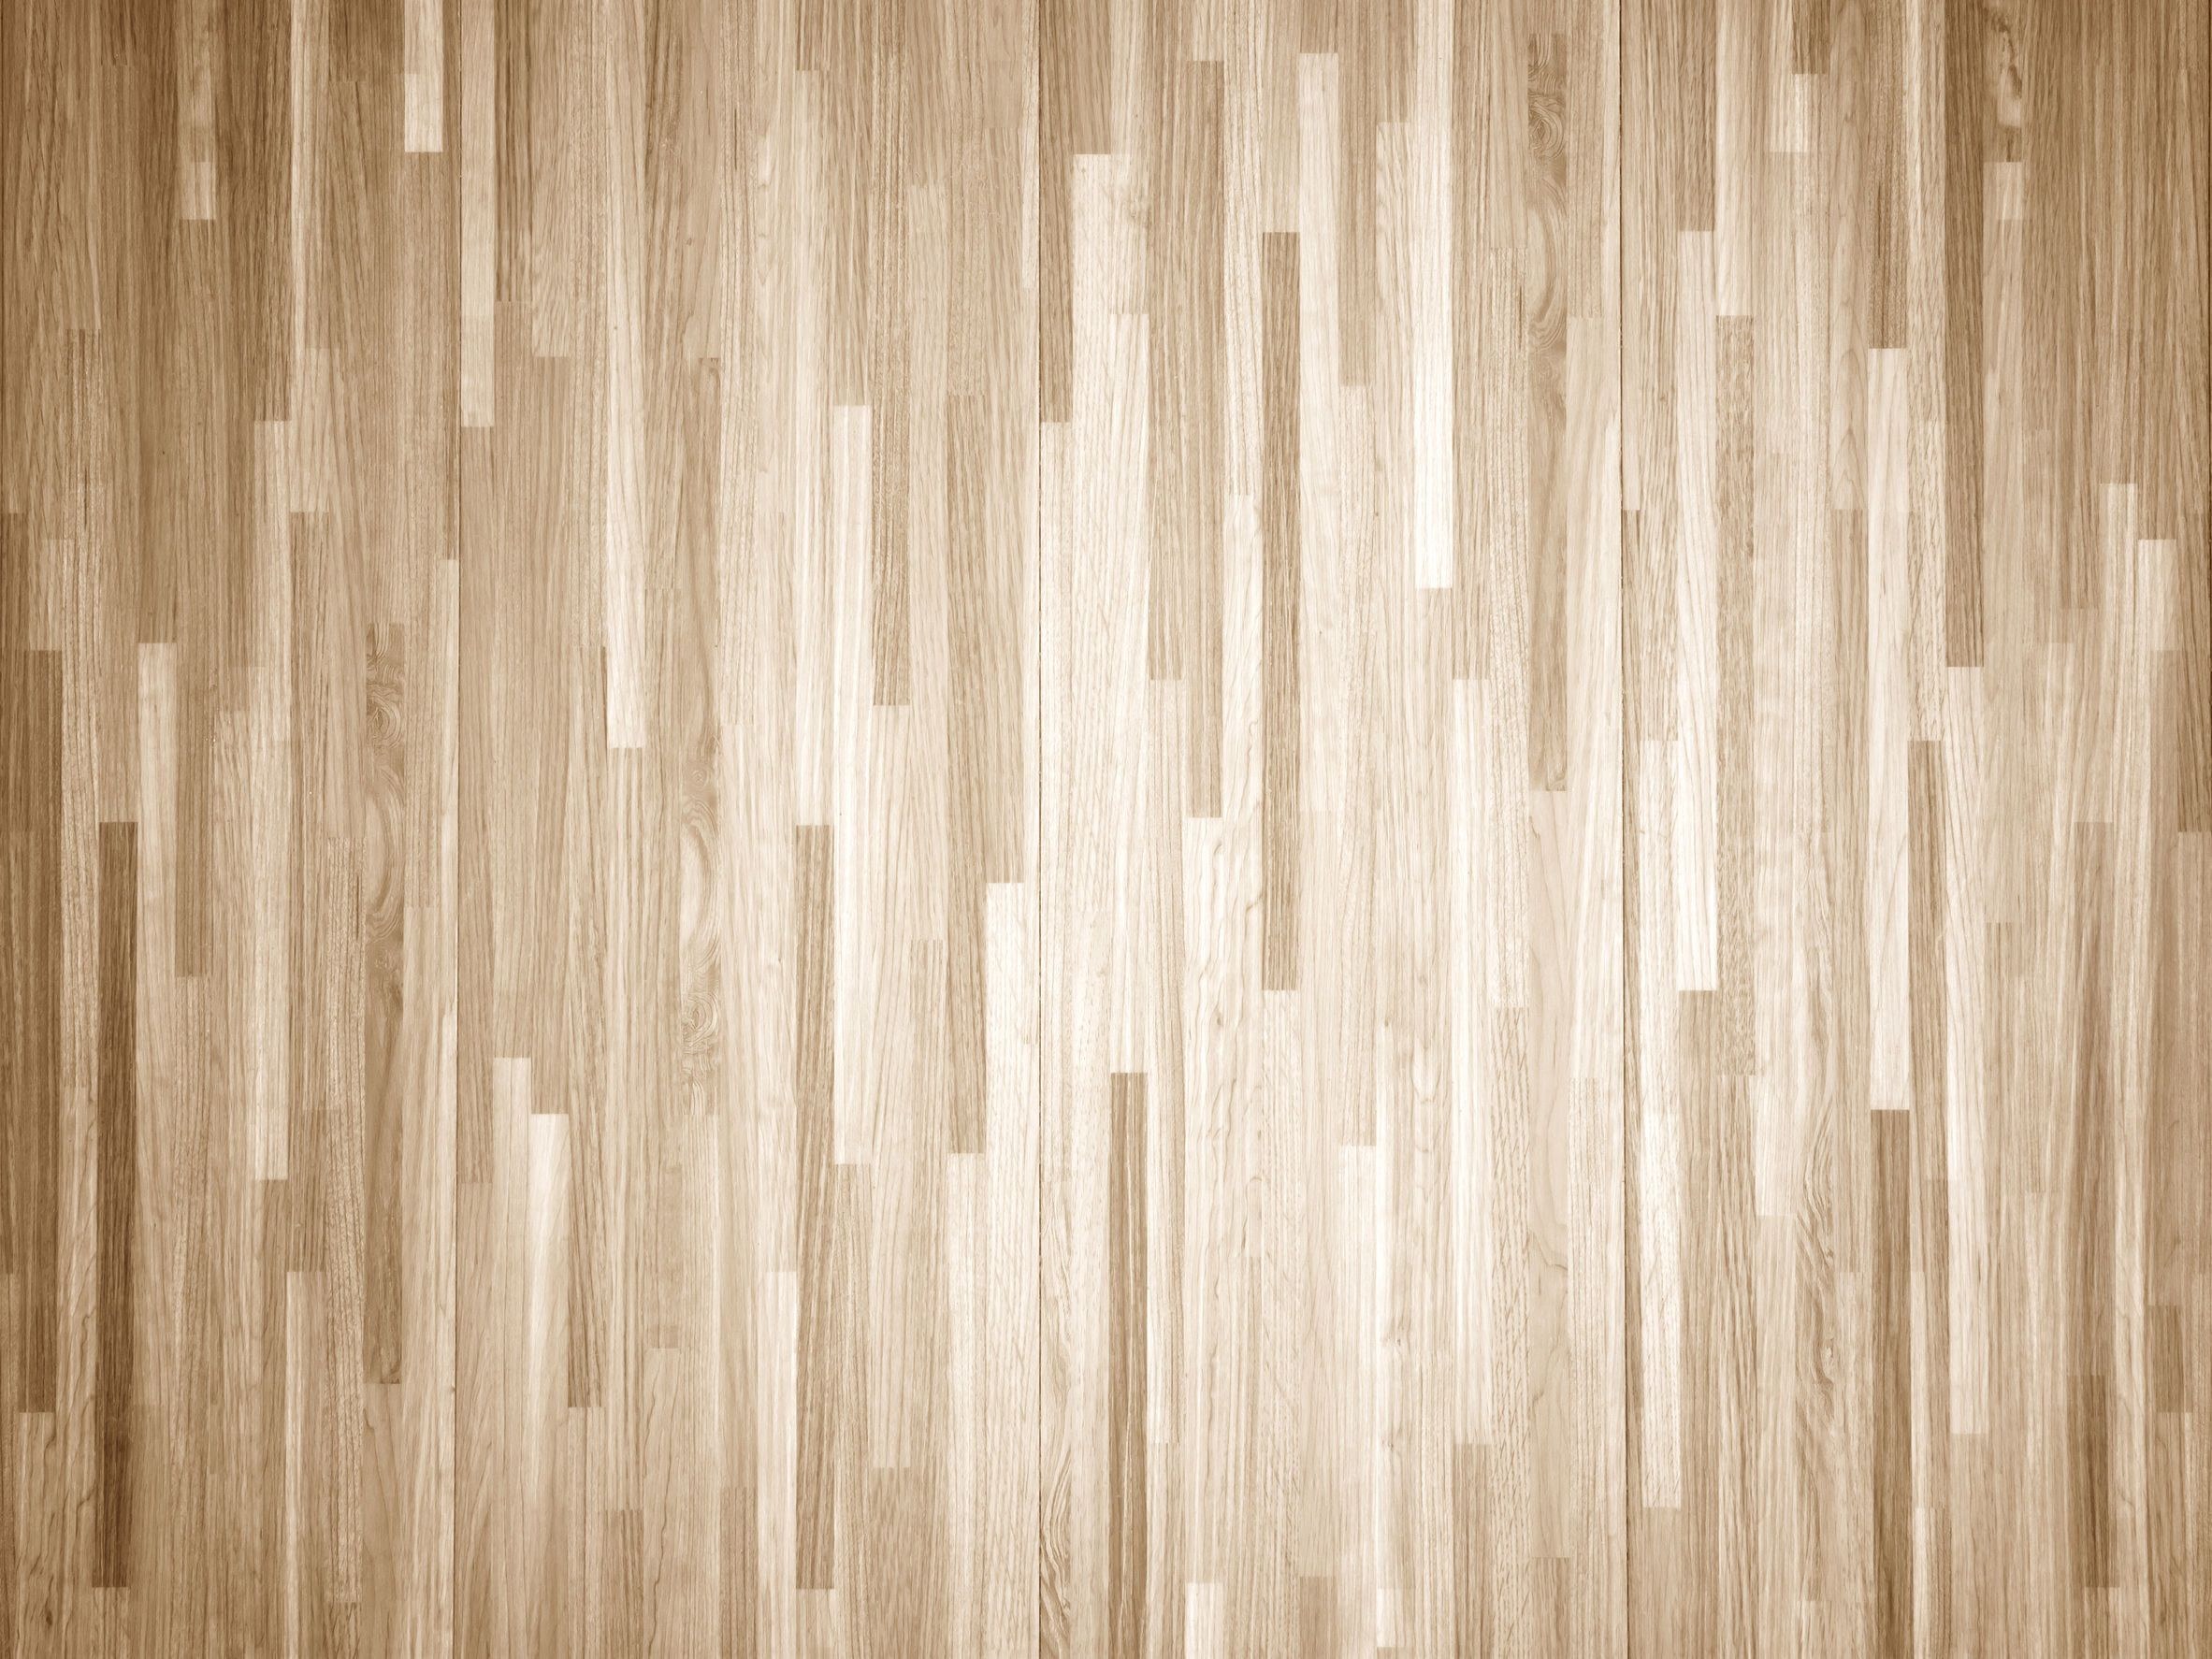 24 Lovable Hardwood Floor Cost Per Foot 2024 free download hardwood floor cost per foot of how to chemically strip wood floors woodfloordoctor com inside you